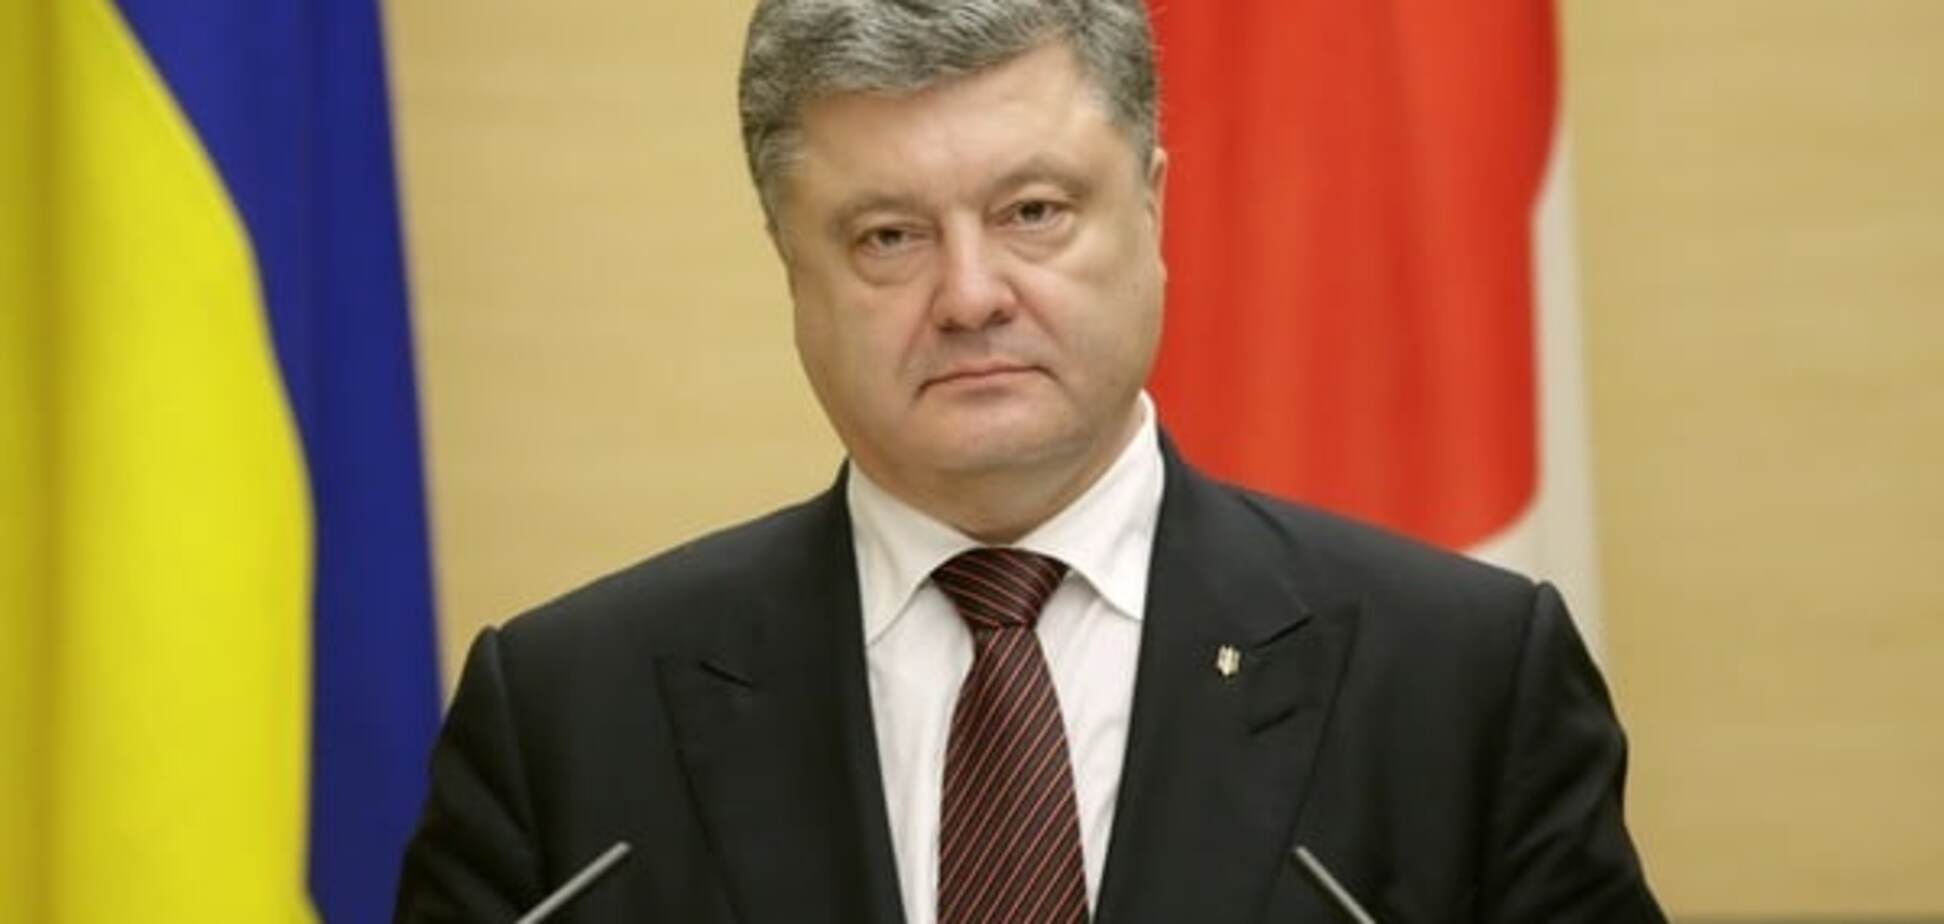 Порошенко почав консультації щодо кандидатури генпрокурора - Луценко